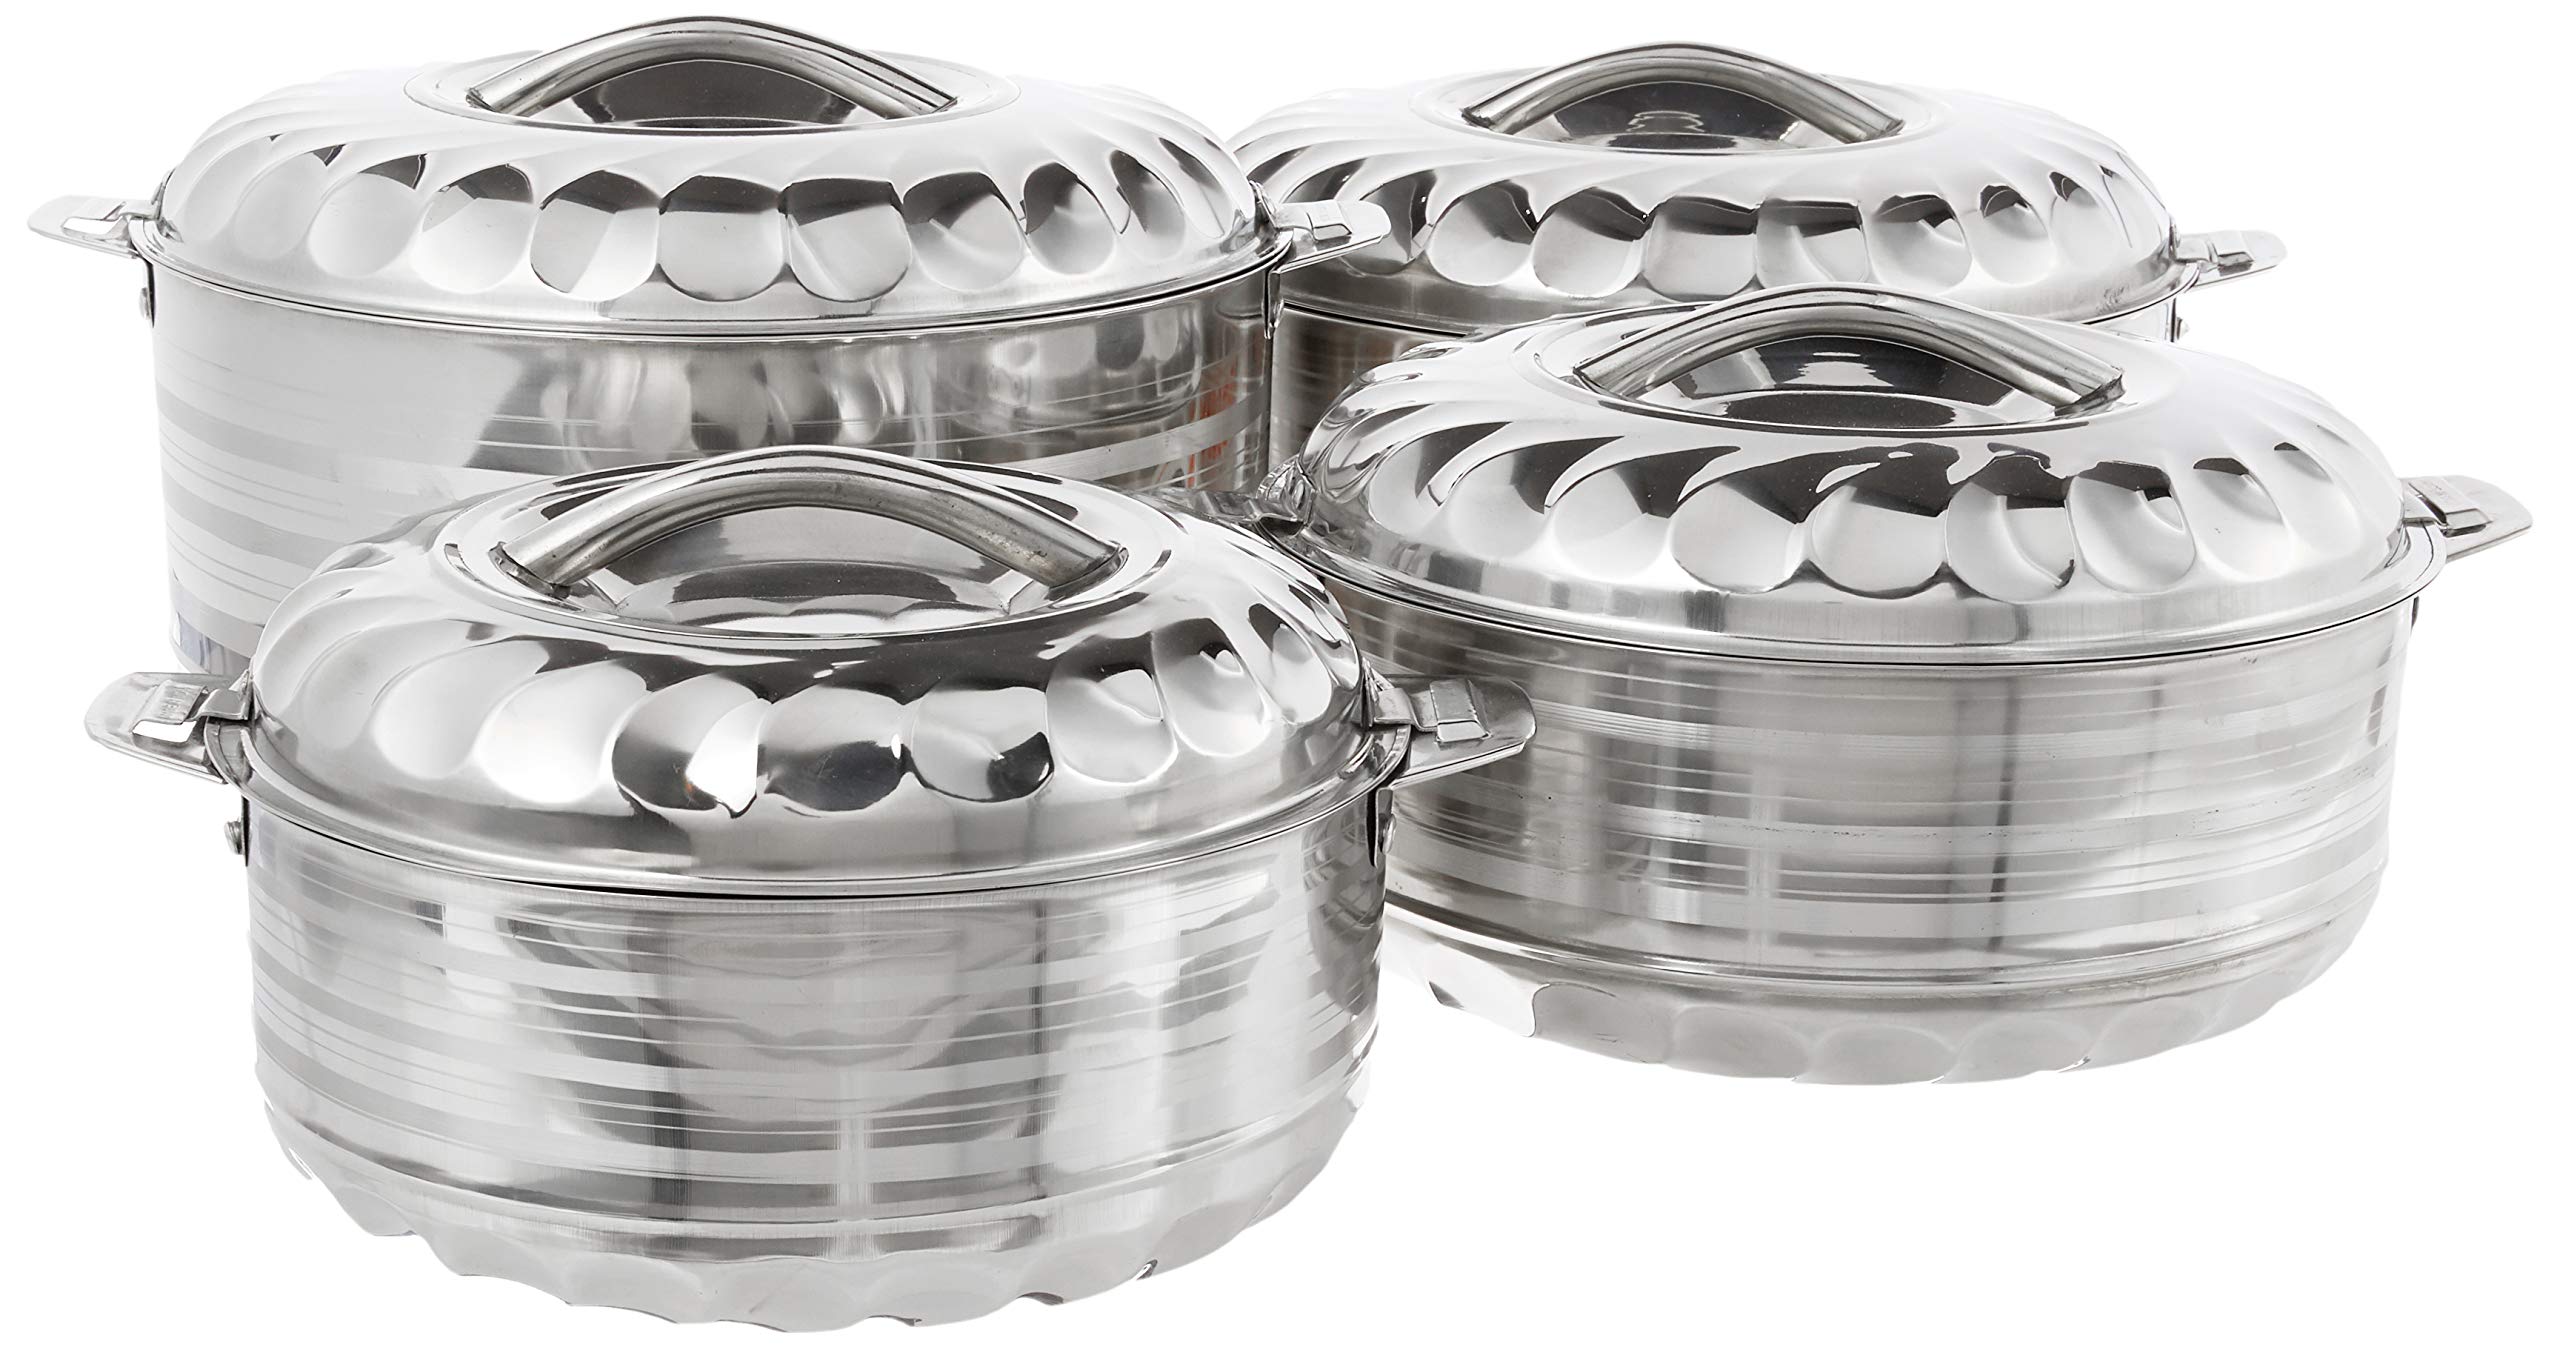 Vinod 4-Piece Insulated Casserole Food Warmer/Cooler Hot Pot Gift Set, 4000mL+5000mL+7500mL+10000mL, Stainless Steel